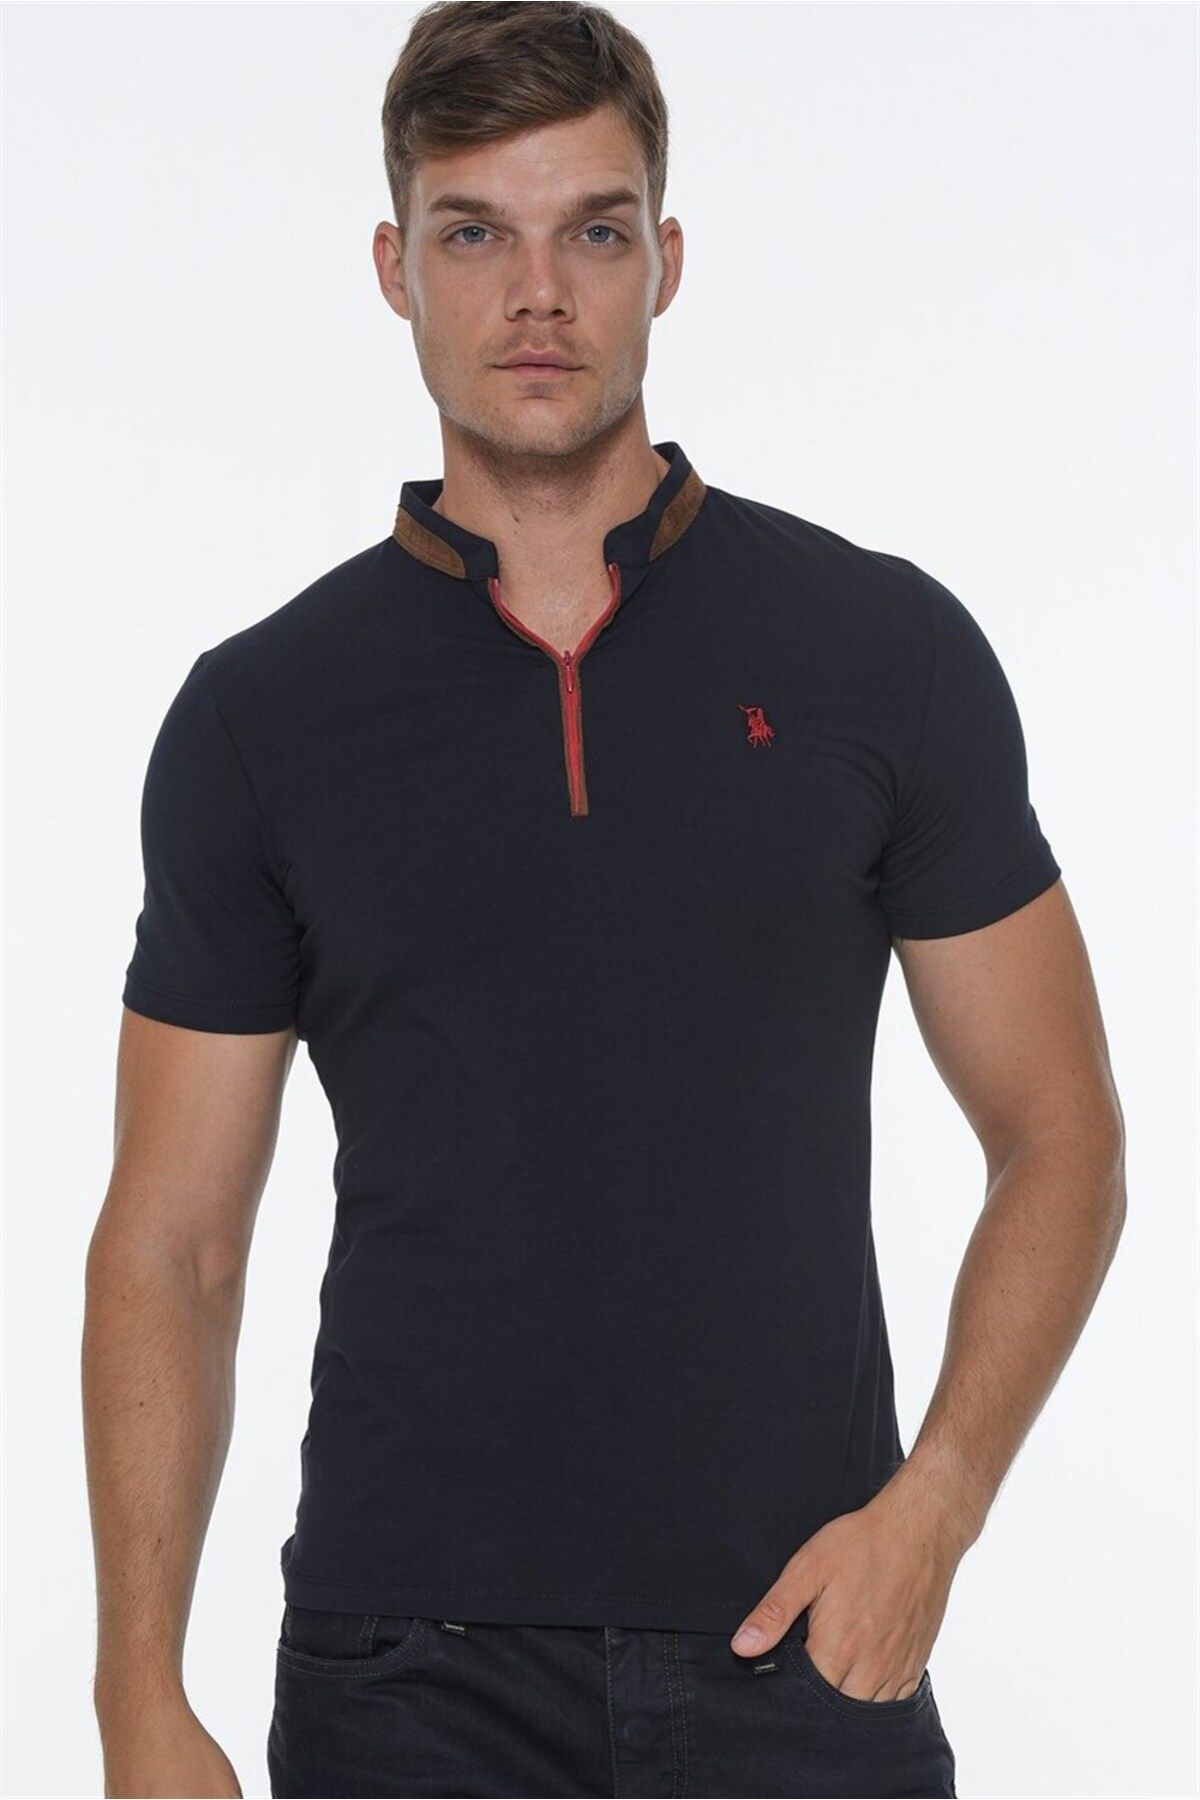 Dewberry ست شش تی شرت مردانه زیپ دار T8571-سفید-مشکی-سرمه ای-آبی آنتراسیت-بورگوندی-خاکی